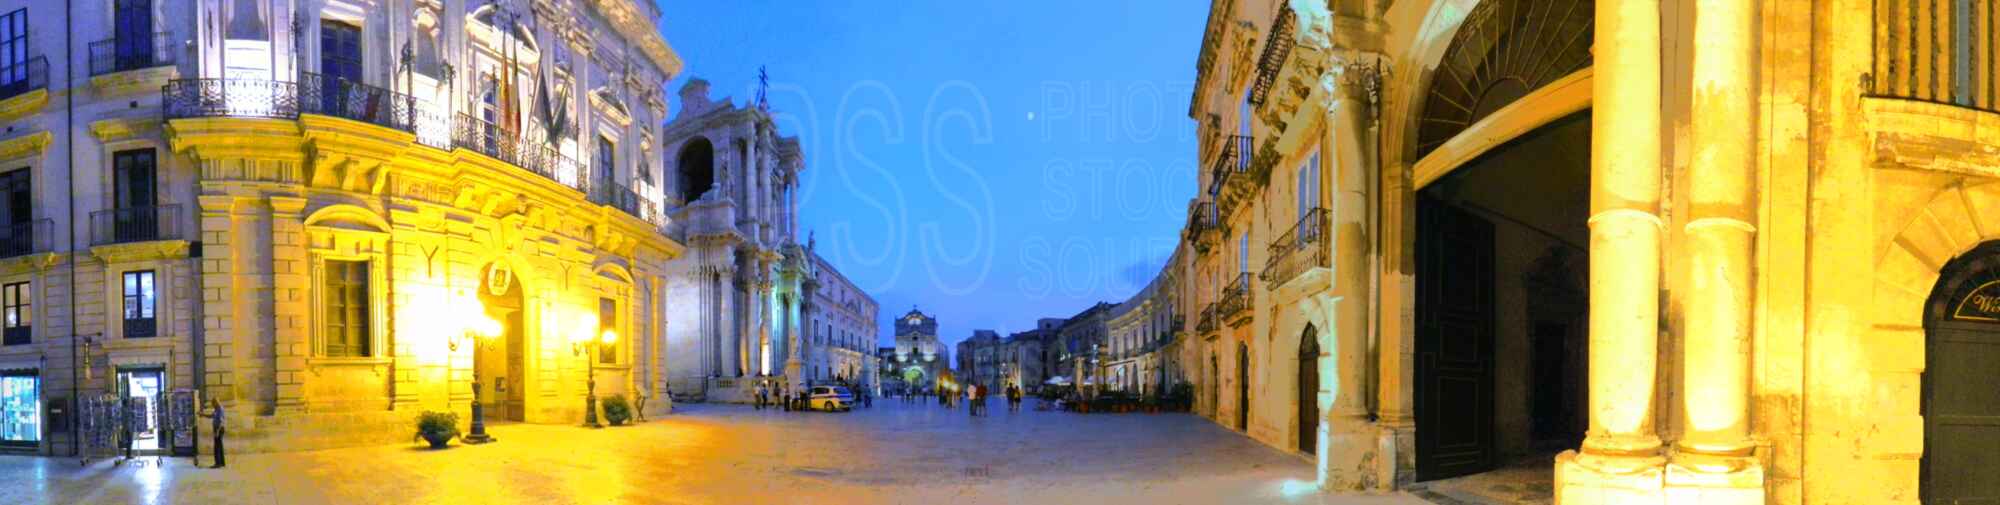 Piazza Duomo at Night